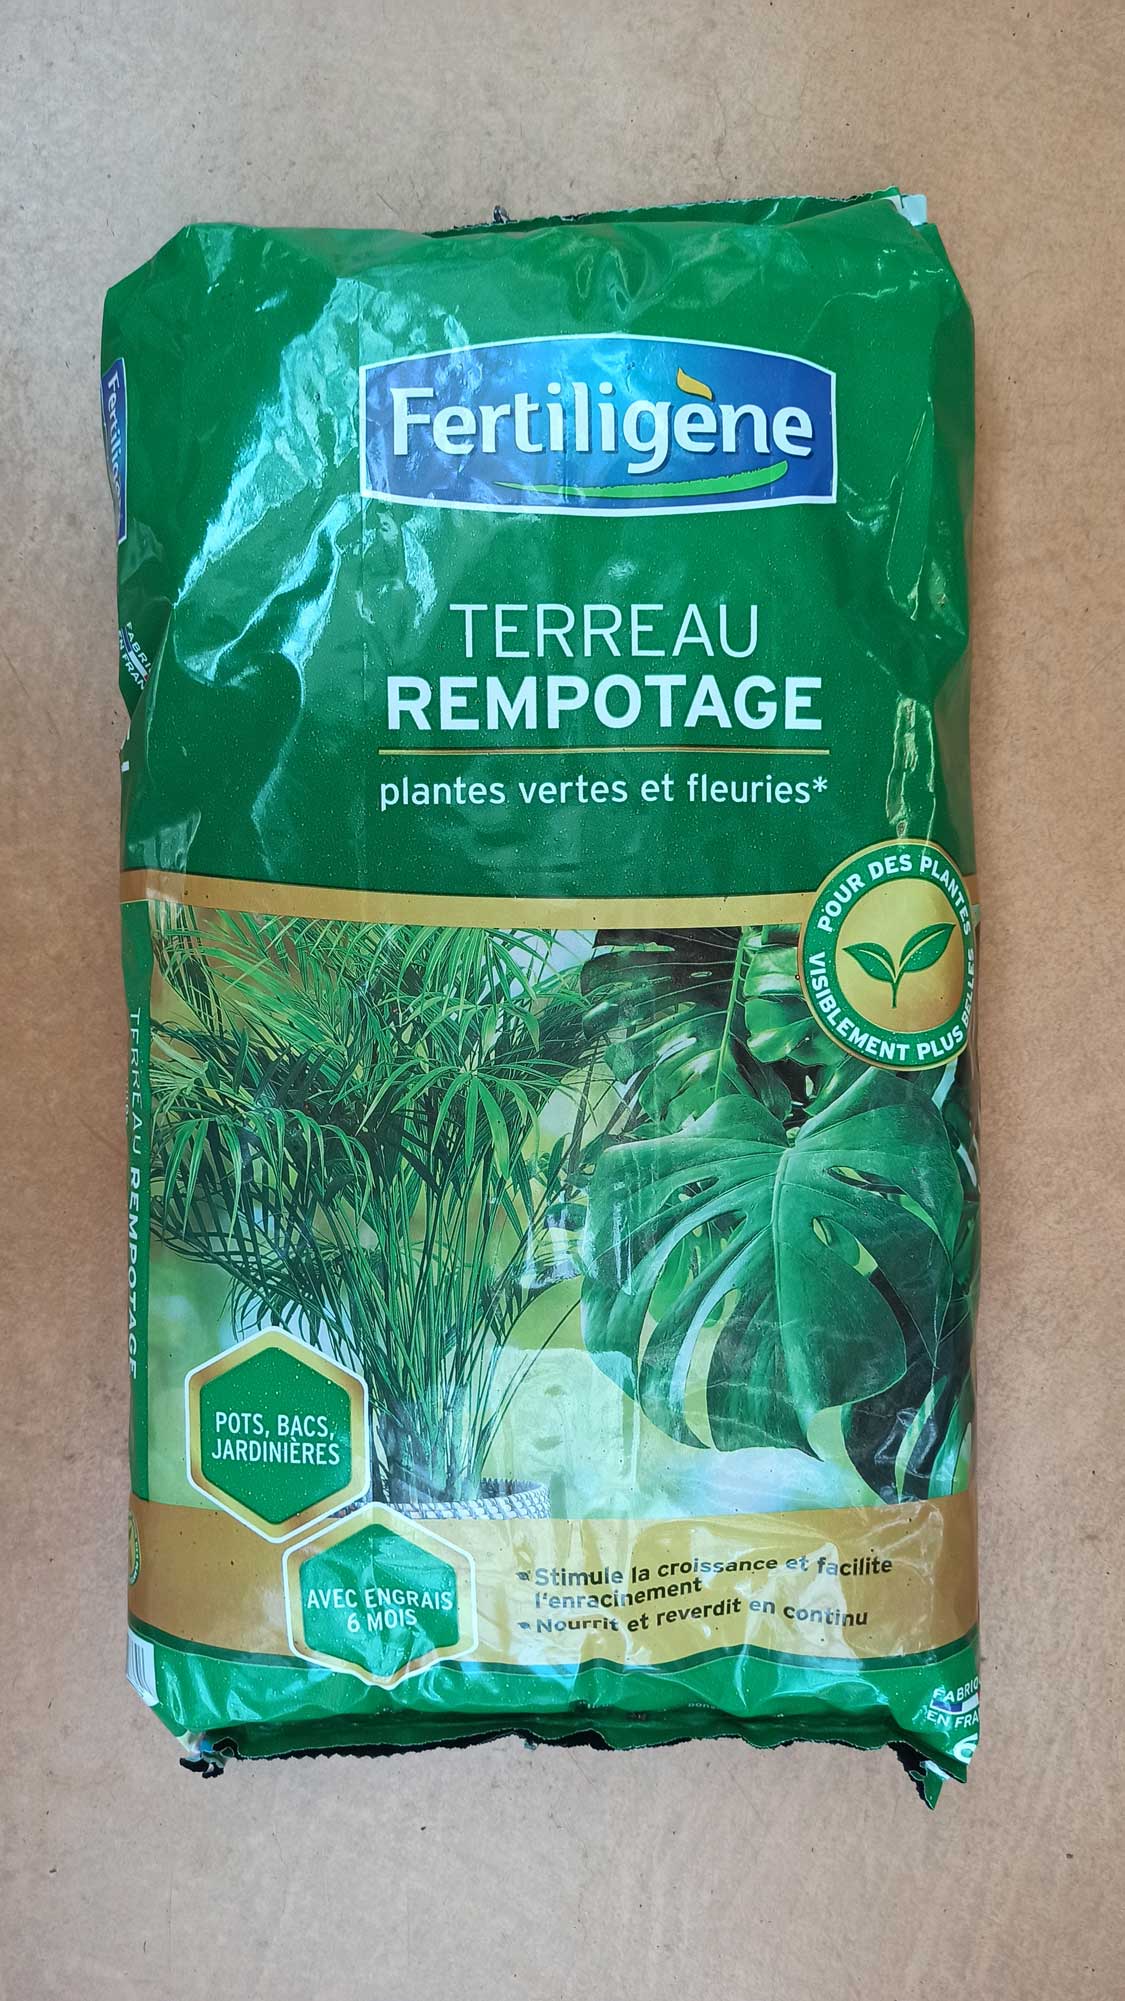 Terreau rempotage plantes vertes & plantes fleuries - Algoflash - 6 L  Algoflash